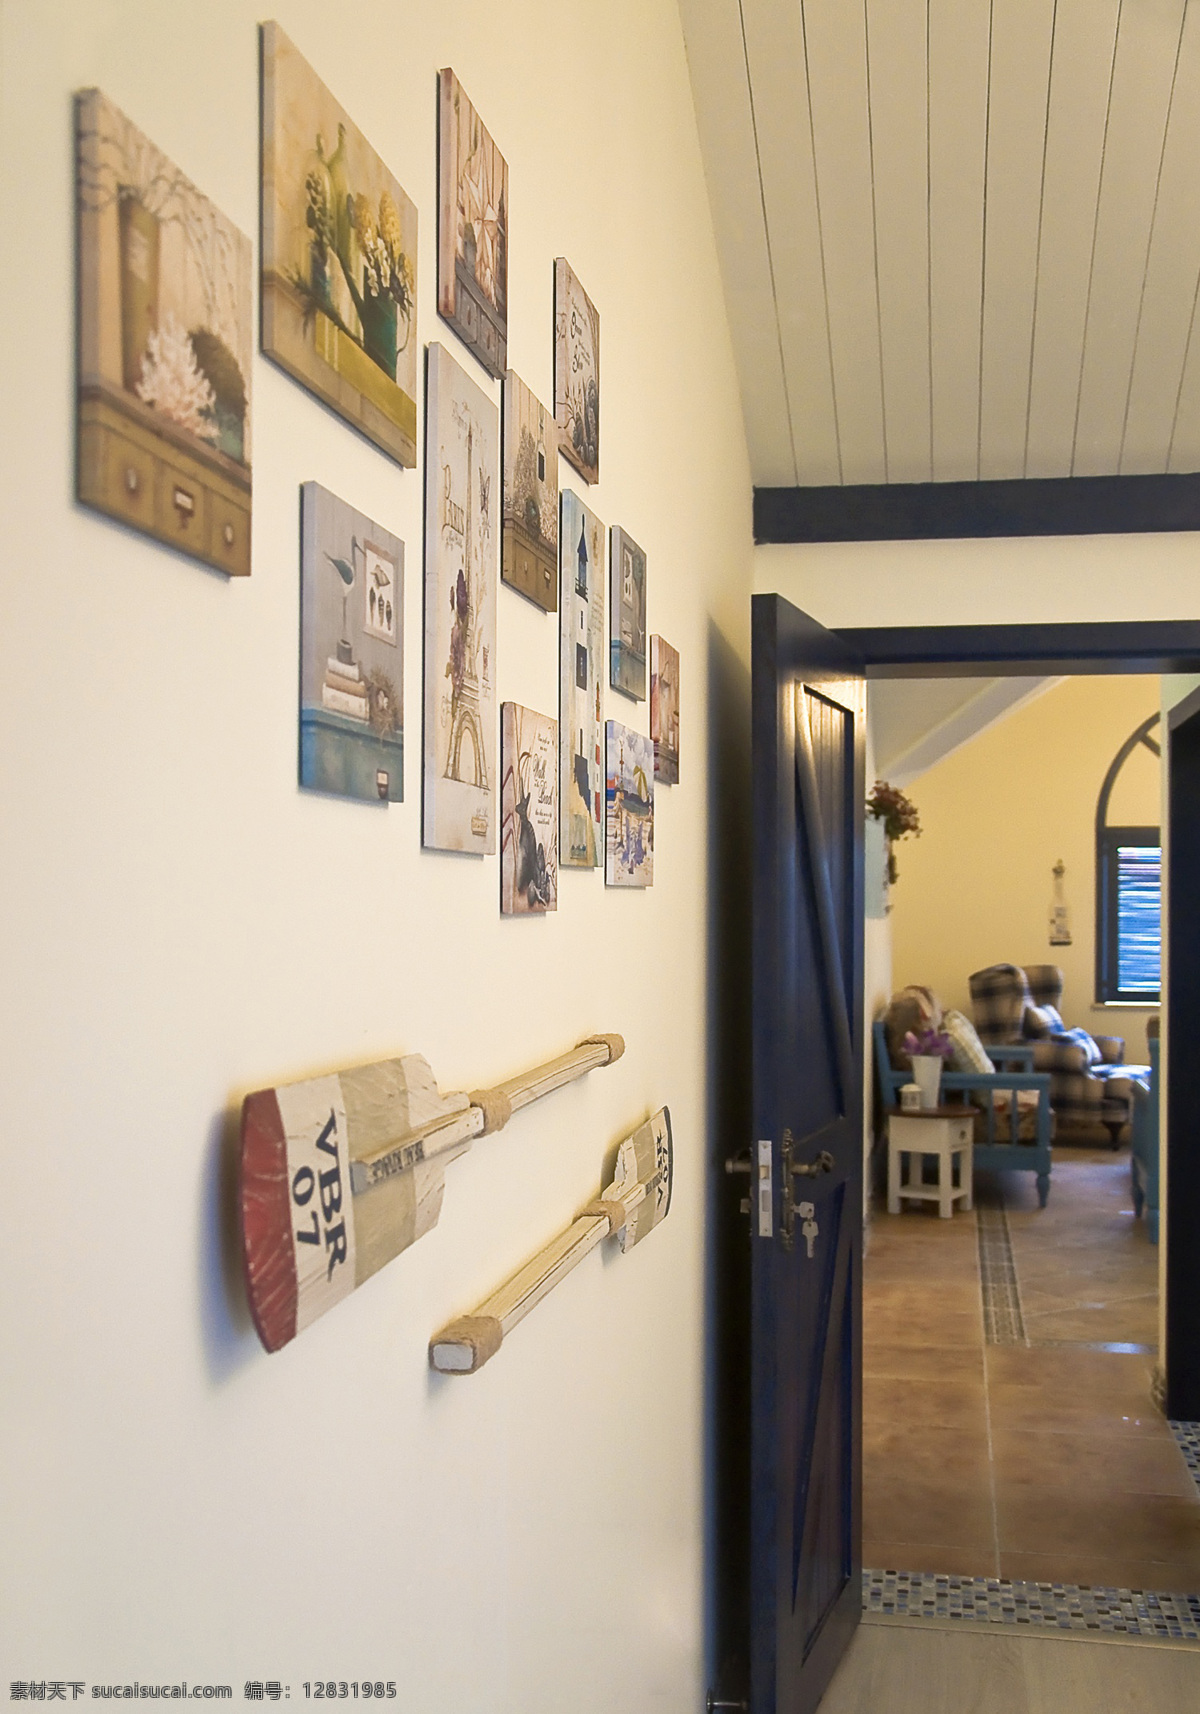 田园 风格 客厅 照片 墙 室内装修 效果图 照片墙 客厅装修 瓷砖地板 船桨装饰